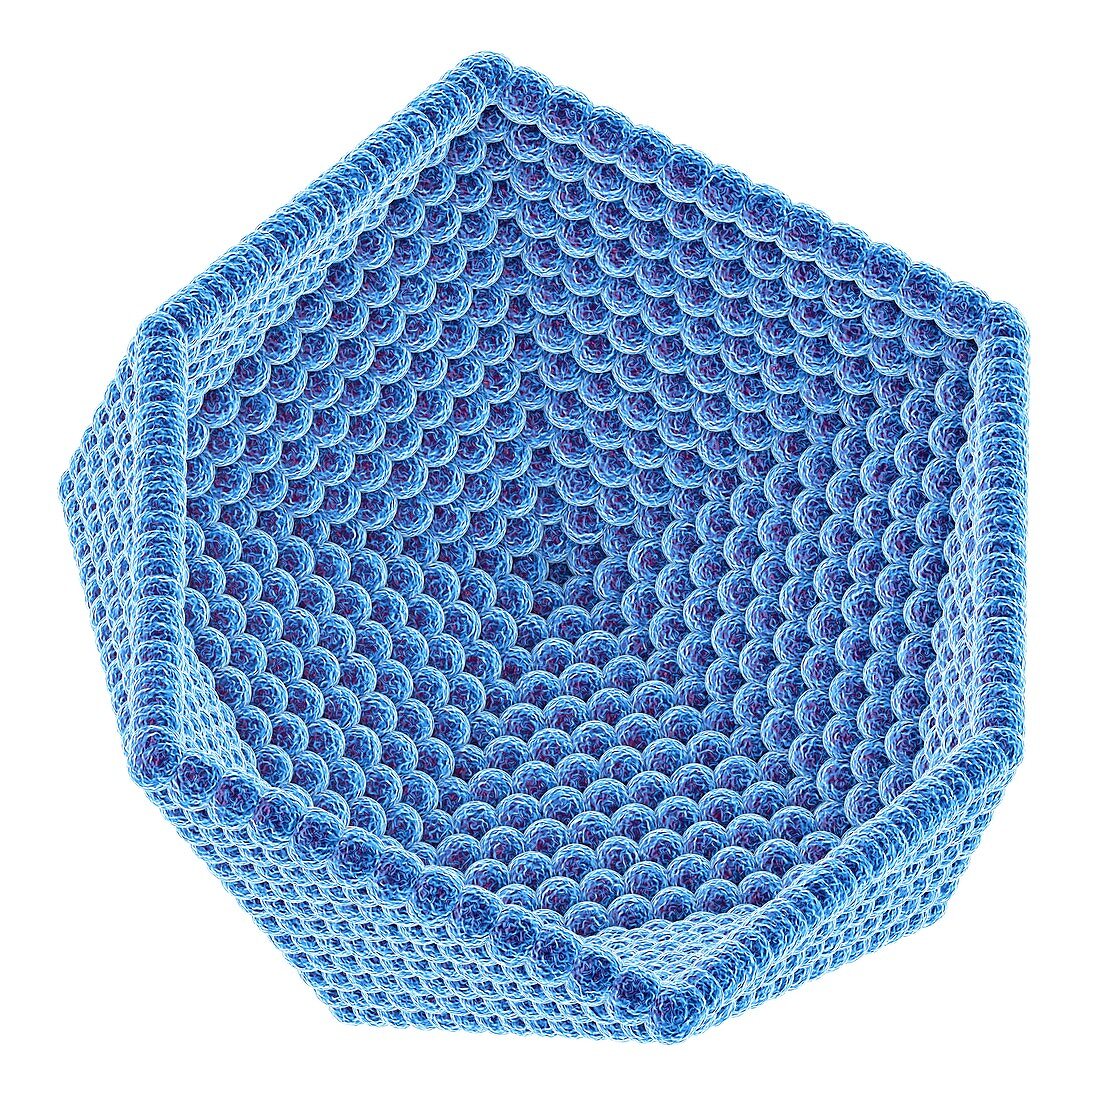 Icosahedral virus capsid, illustration